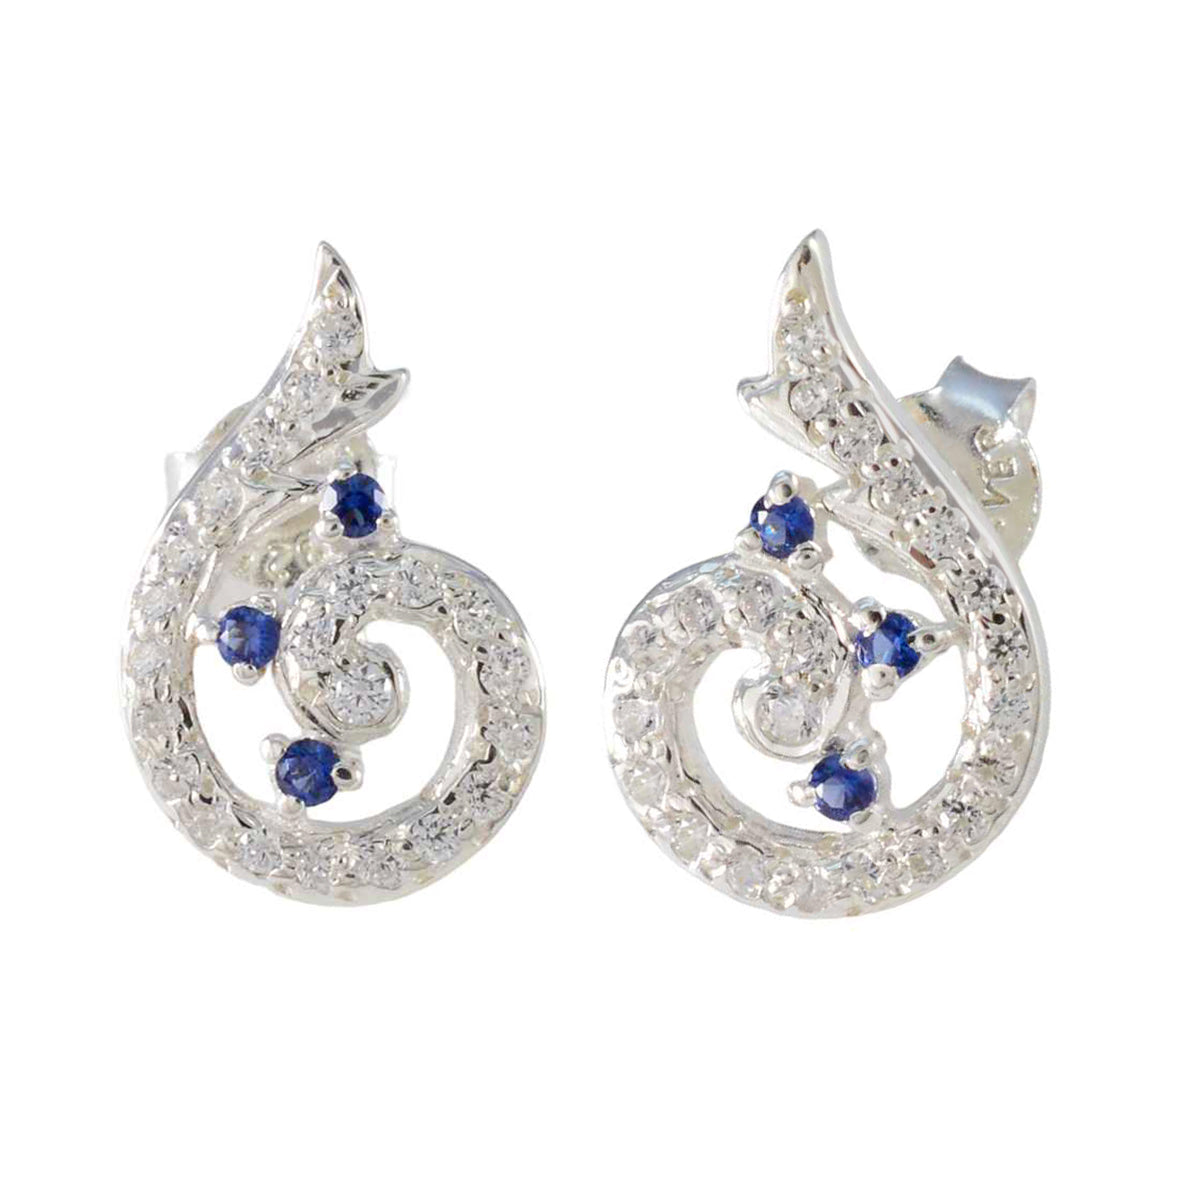 Riyo belle 925 boucle d'oreille en argent sterling pour femme bleu saphir cz boucle d'oreille réglage de la lunette boucle d'oreille bleue boucle d'oreille